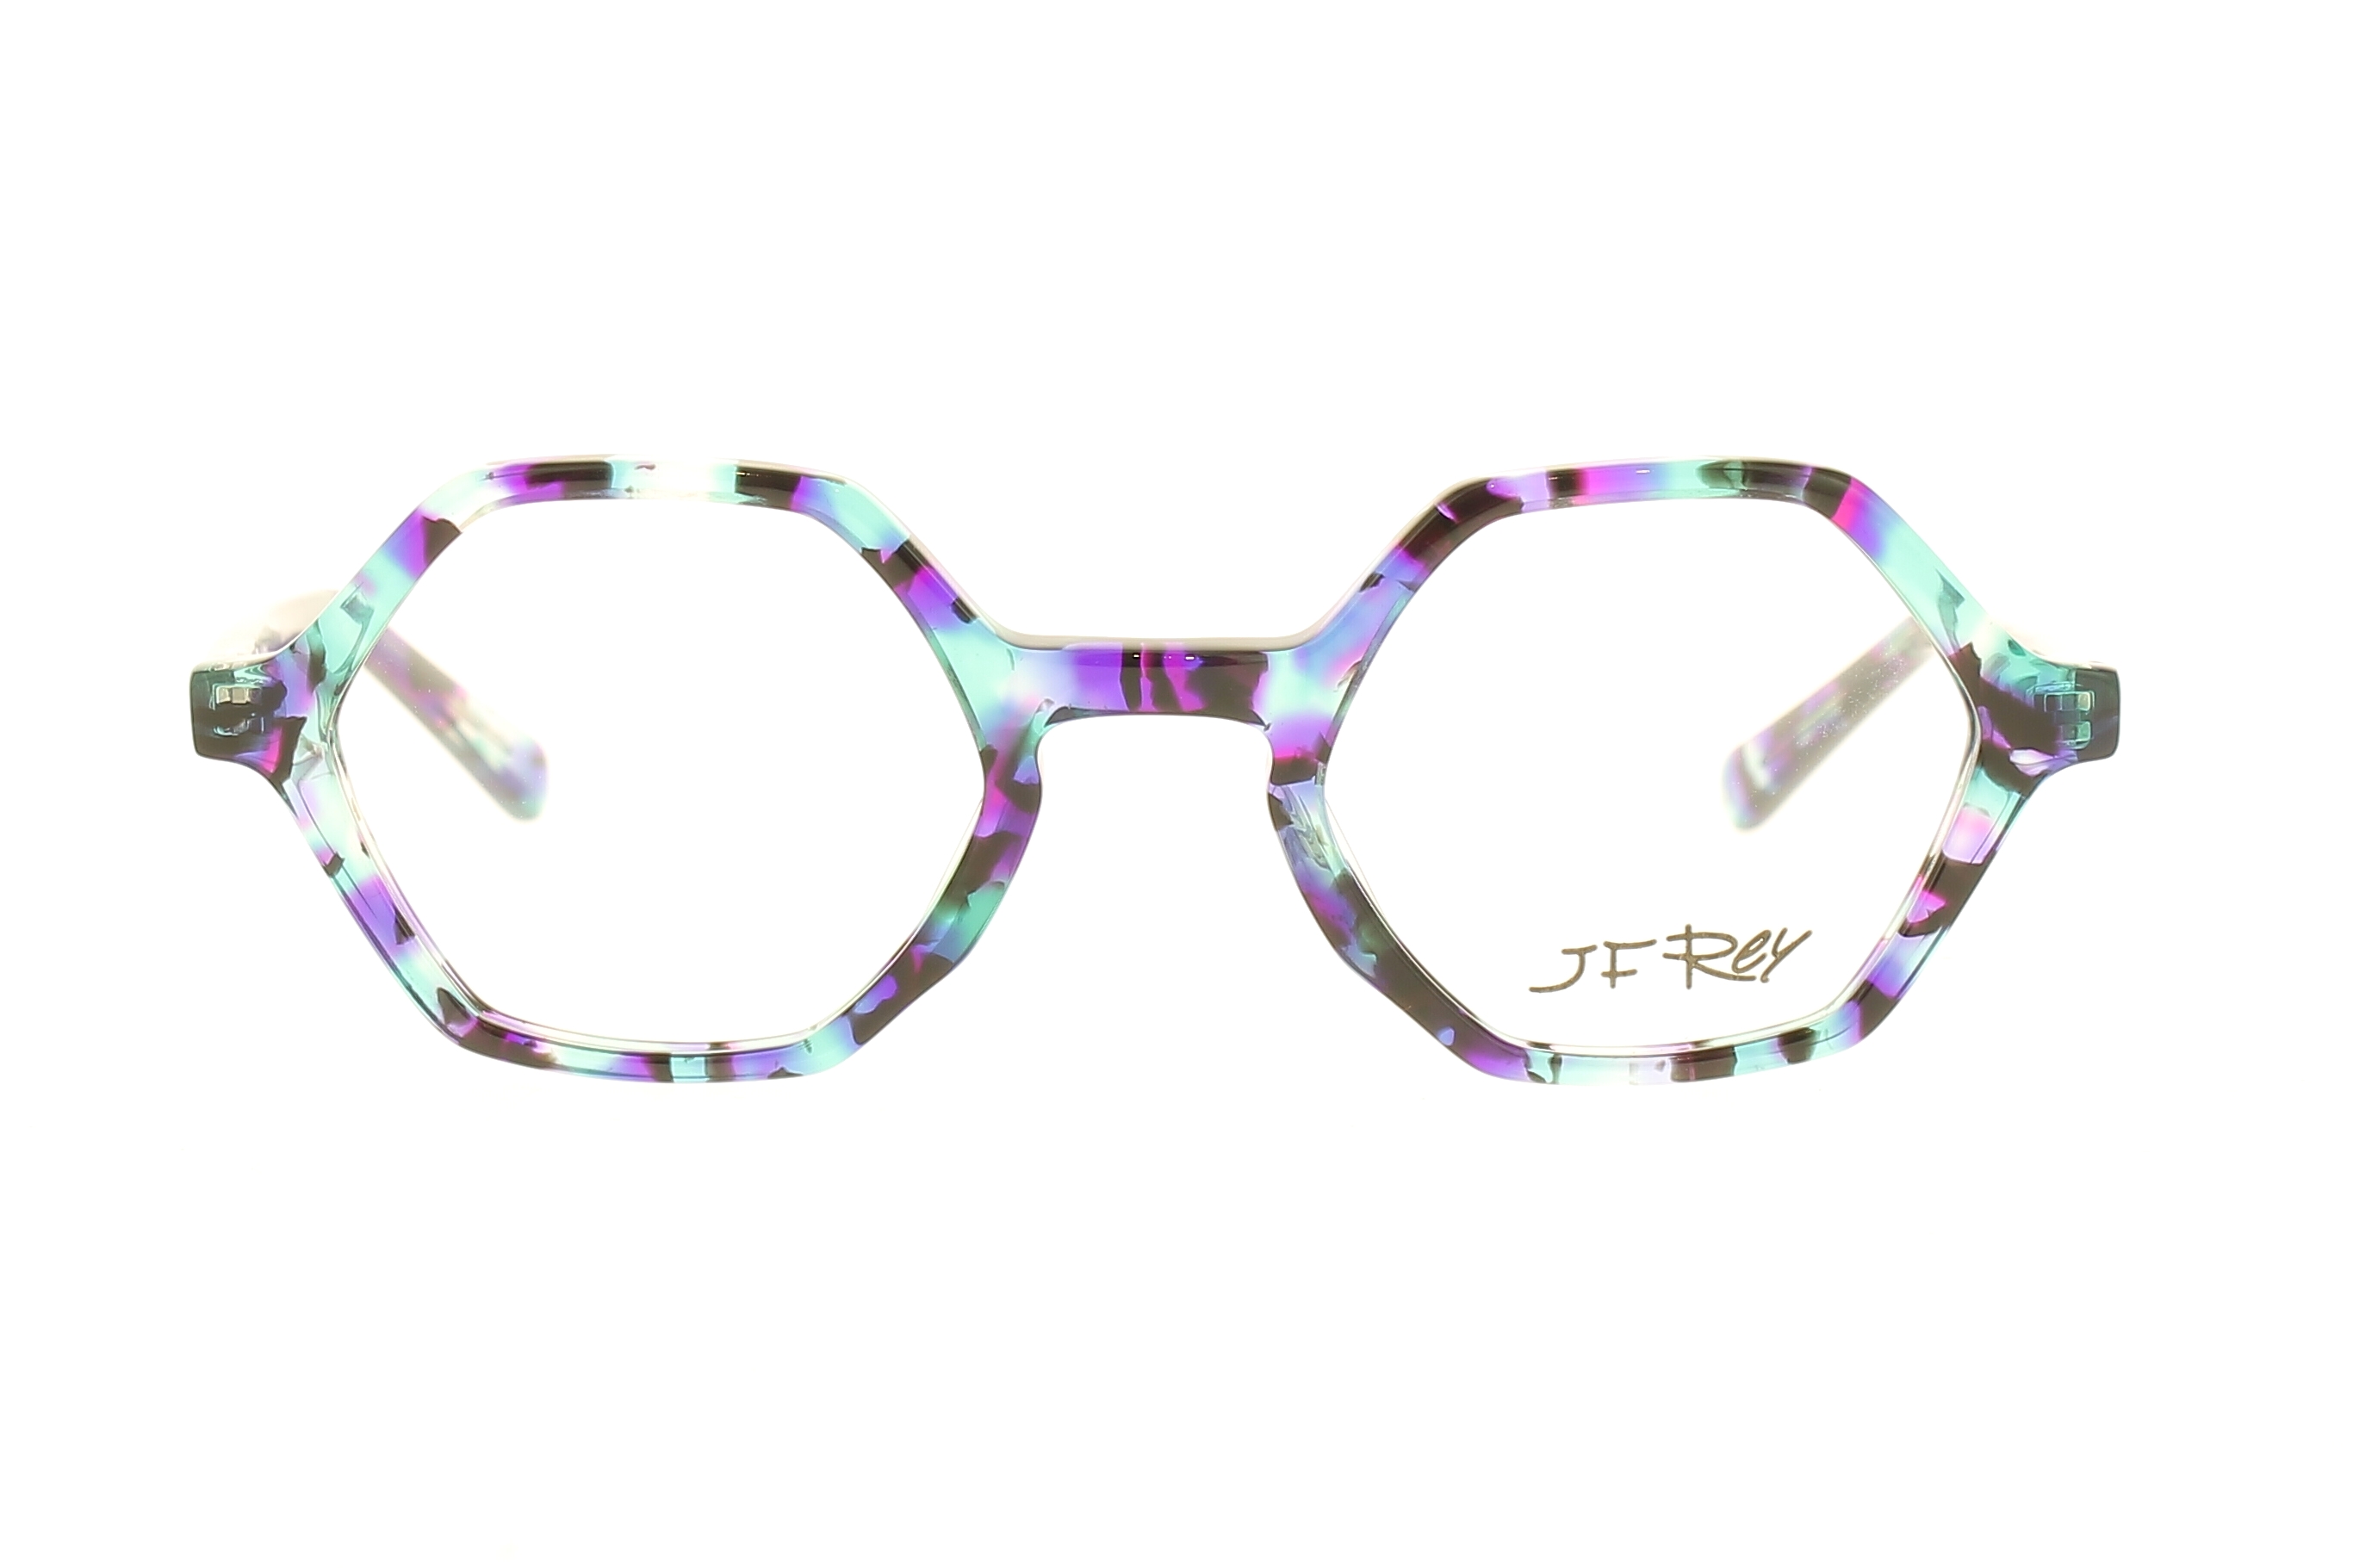 Paire de lunettes de vue Jf-rey Flash couleur turquoise - Doyle